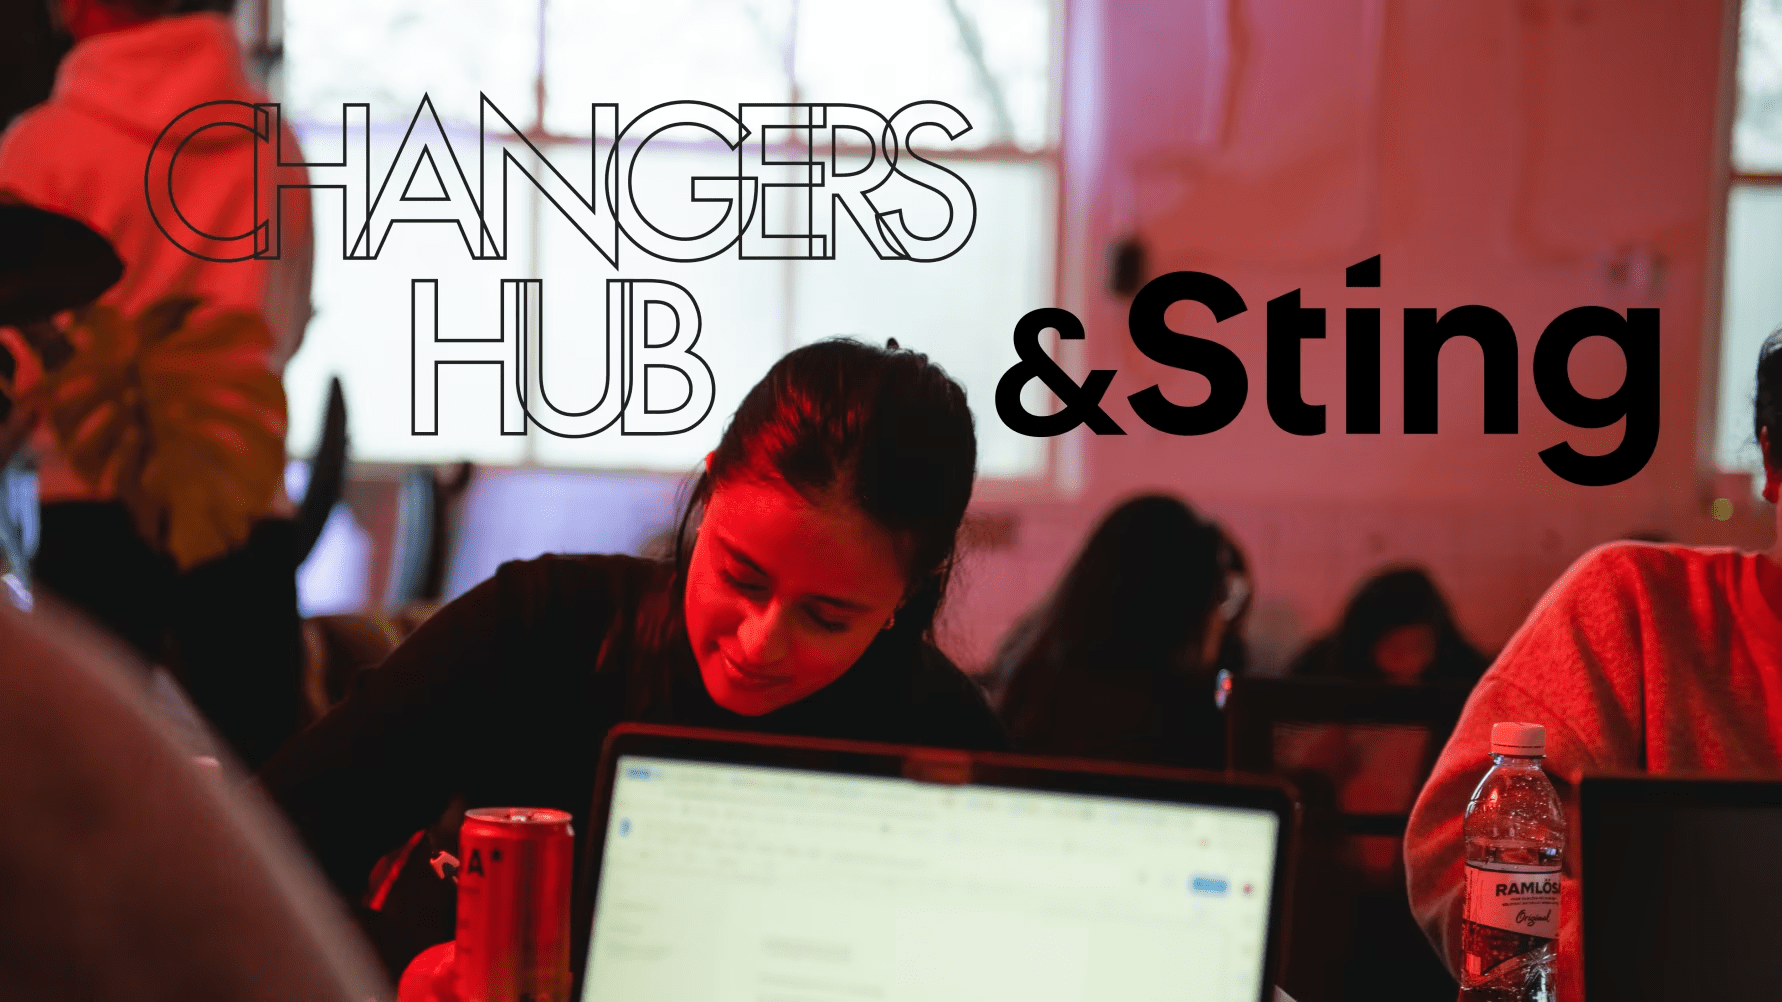 Changers Hub och Acceleratorn Sting inleder partnerskap för att ge unga tech-entreprenörer chansen att testköra sina idéer